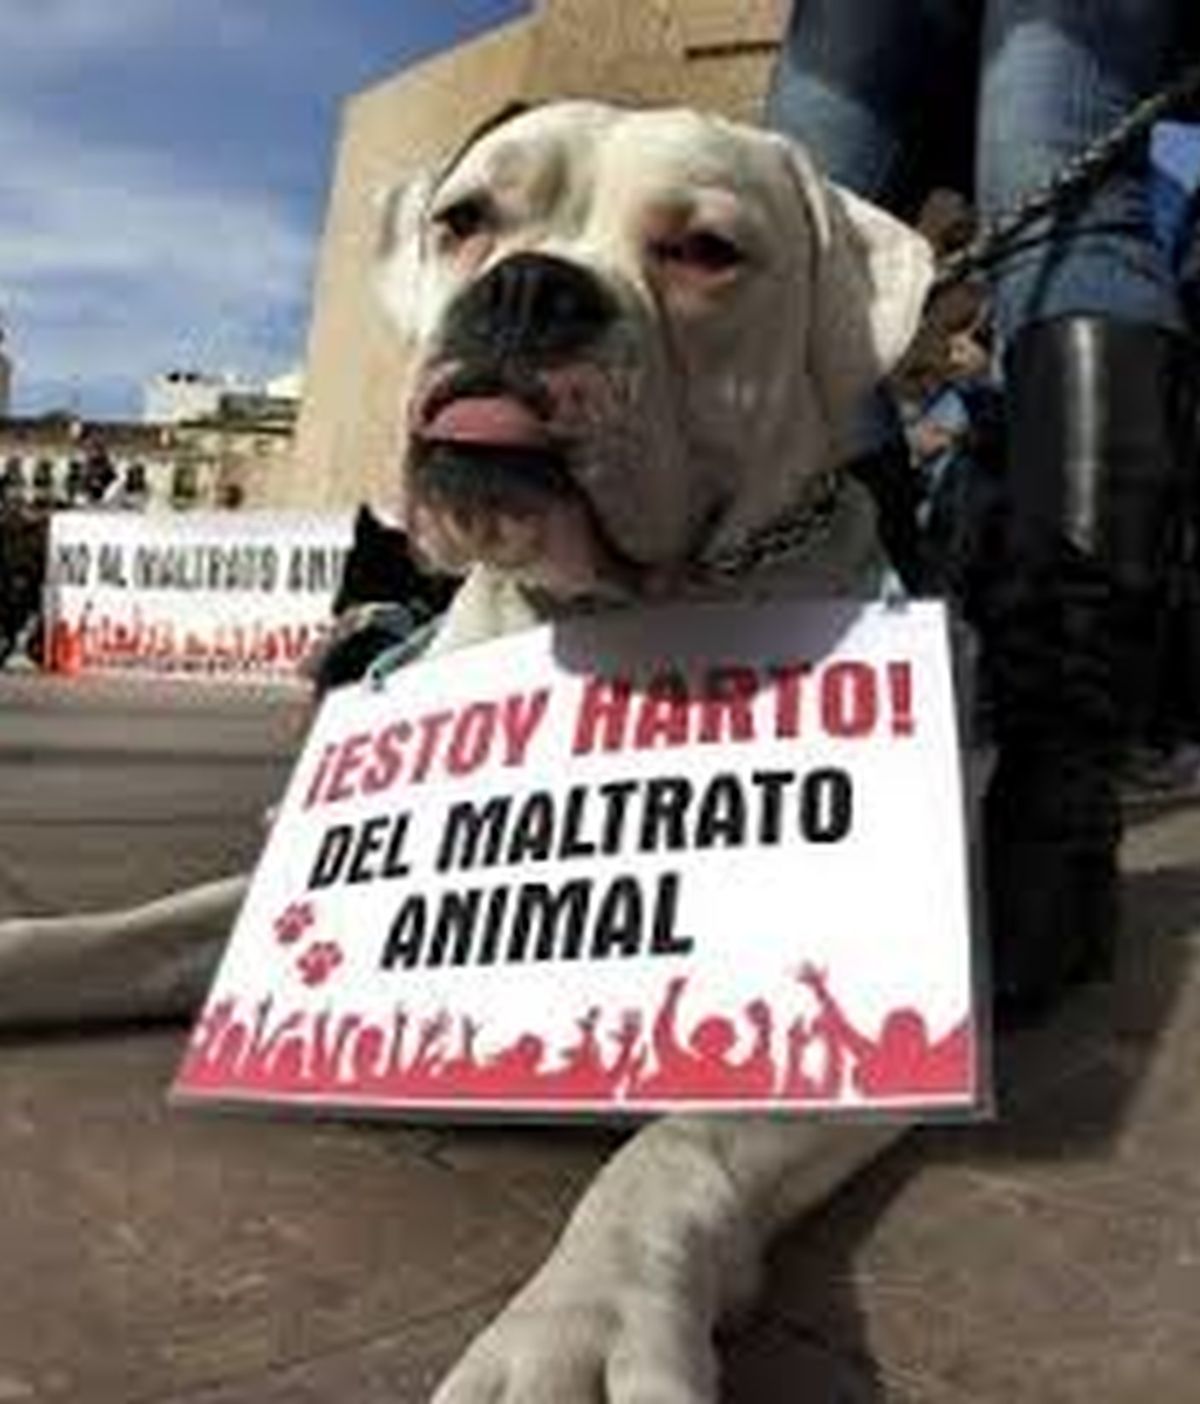 Manifestación contra el maltrato animal